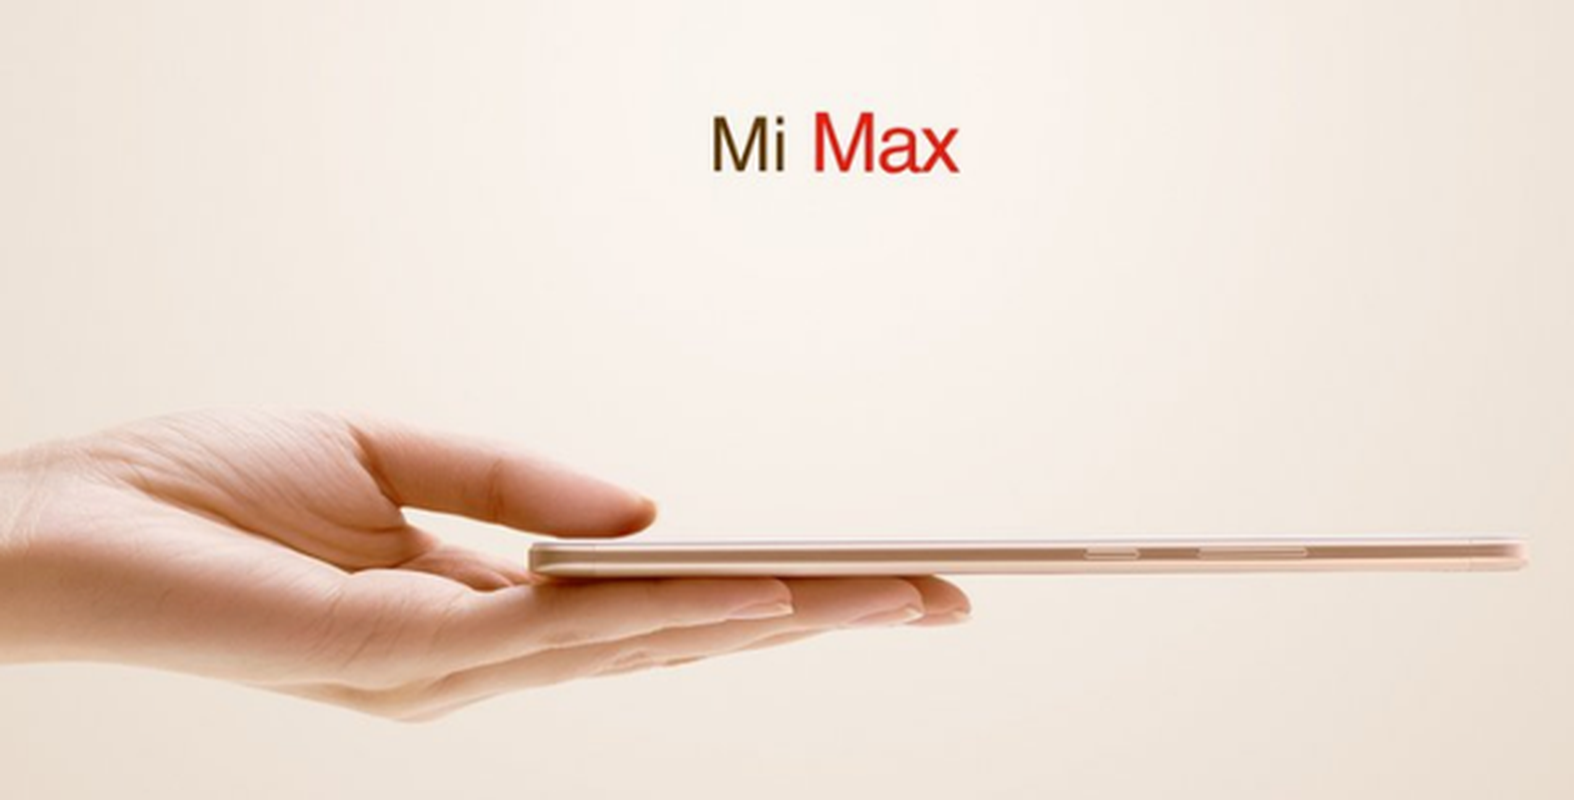 Ngam dien thoai Xiaomi Mi Max 6,44 inch gia hap dan-Hinh-6